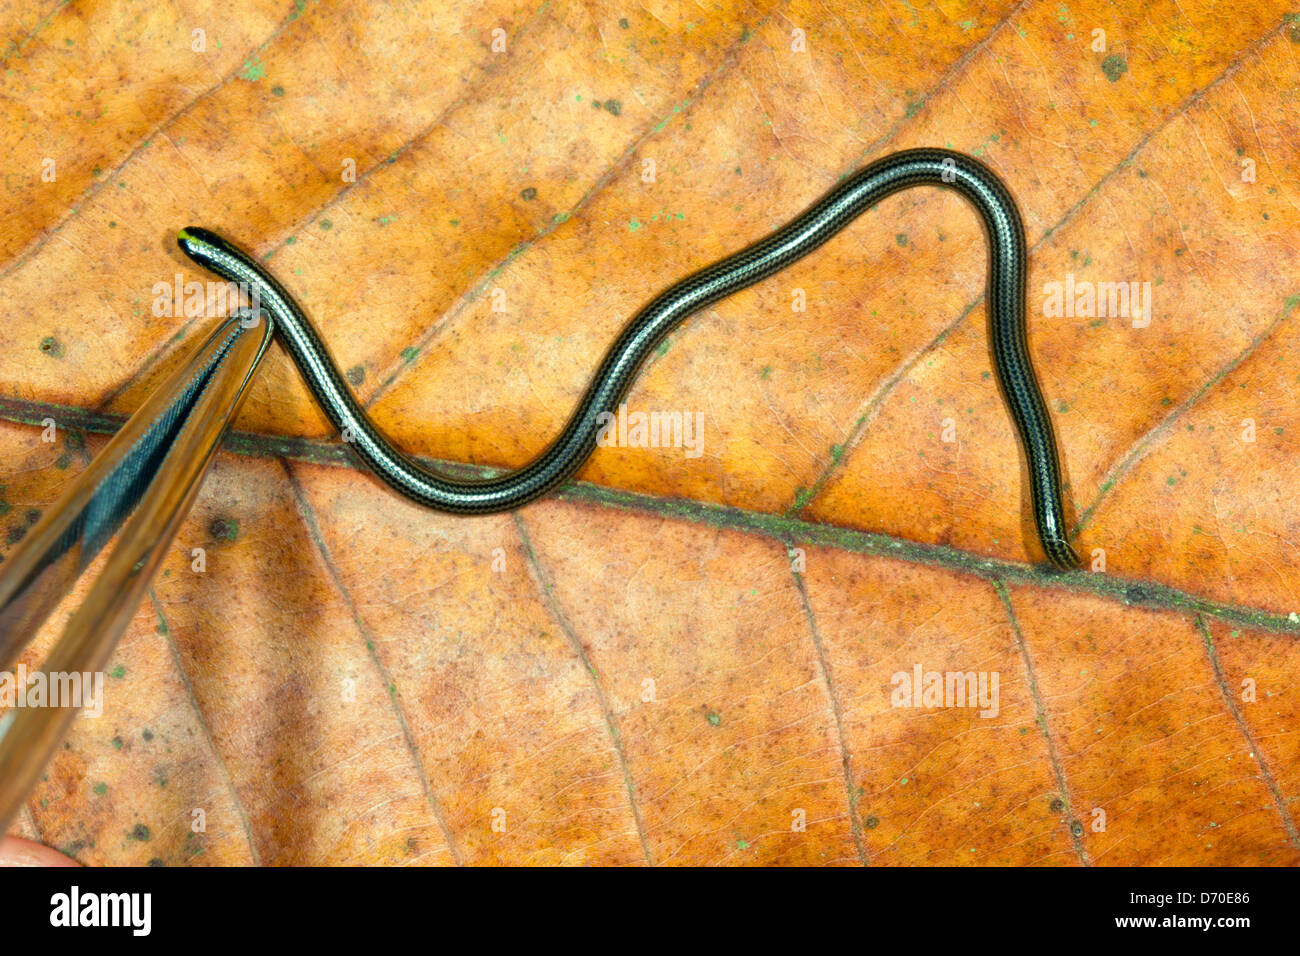 Thread (serpent Leptotyphlops sp.) du sud de l'Equateur. Un minuscule serpent seulement quelques pouces de long. Avec des pinces pour l'échelle Banque D'Images